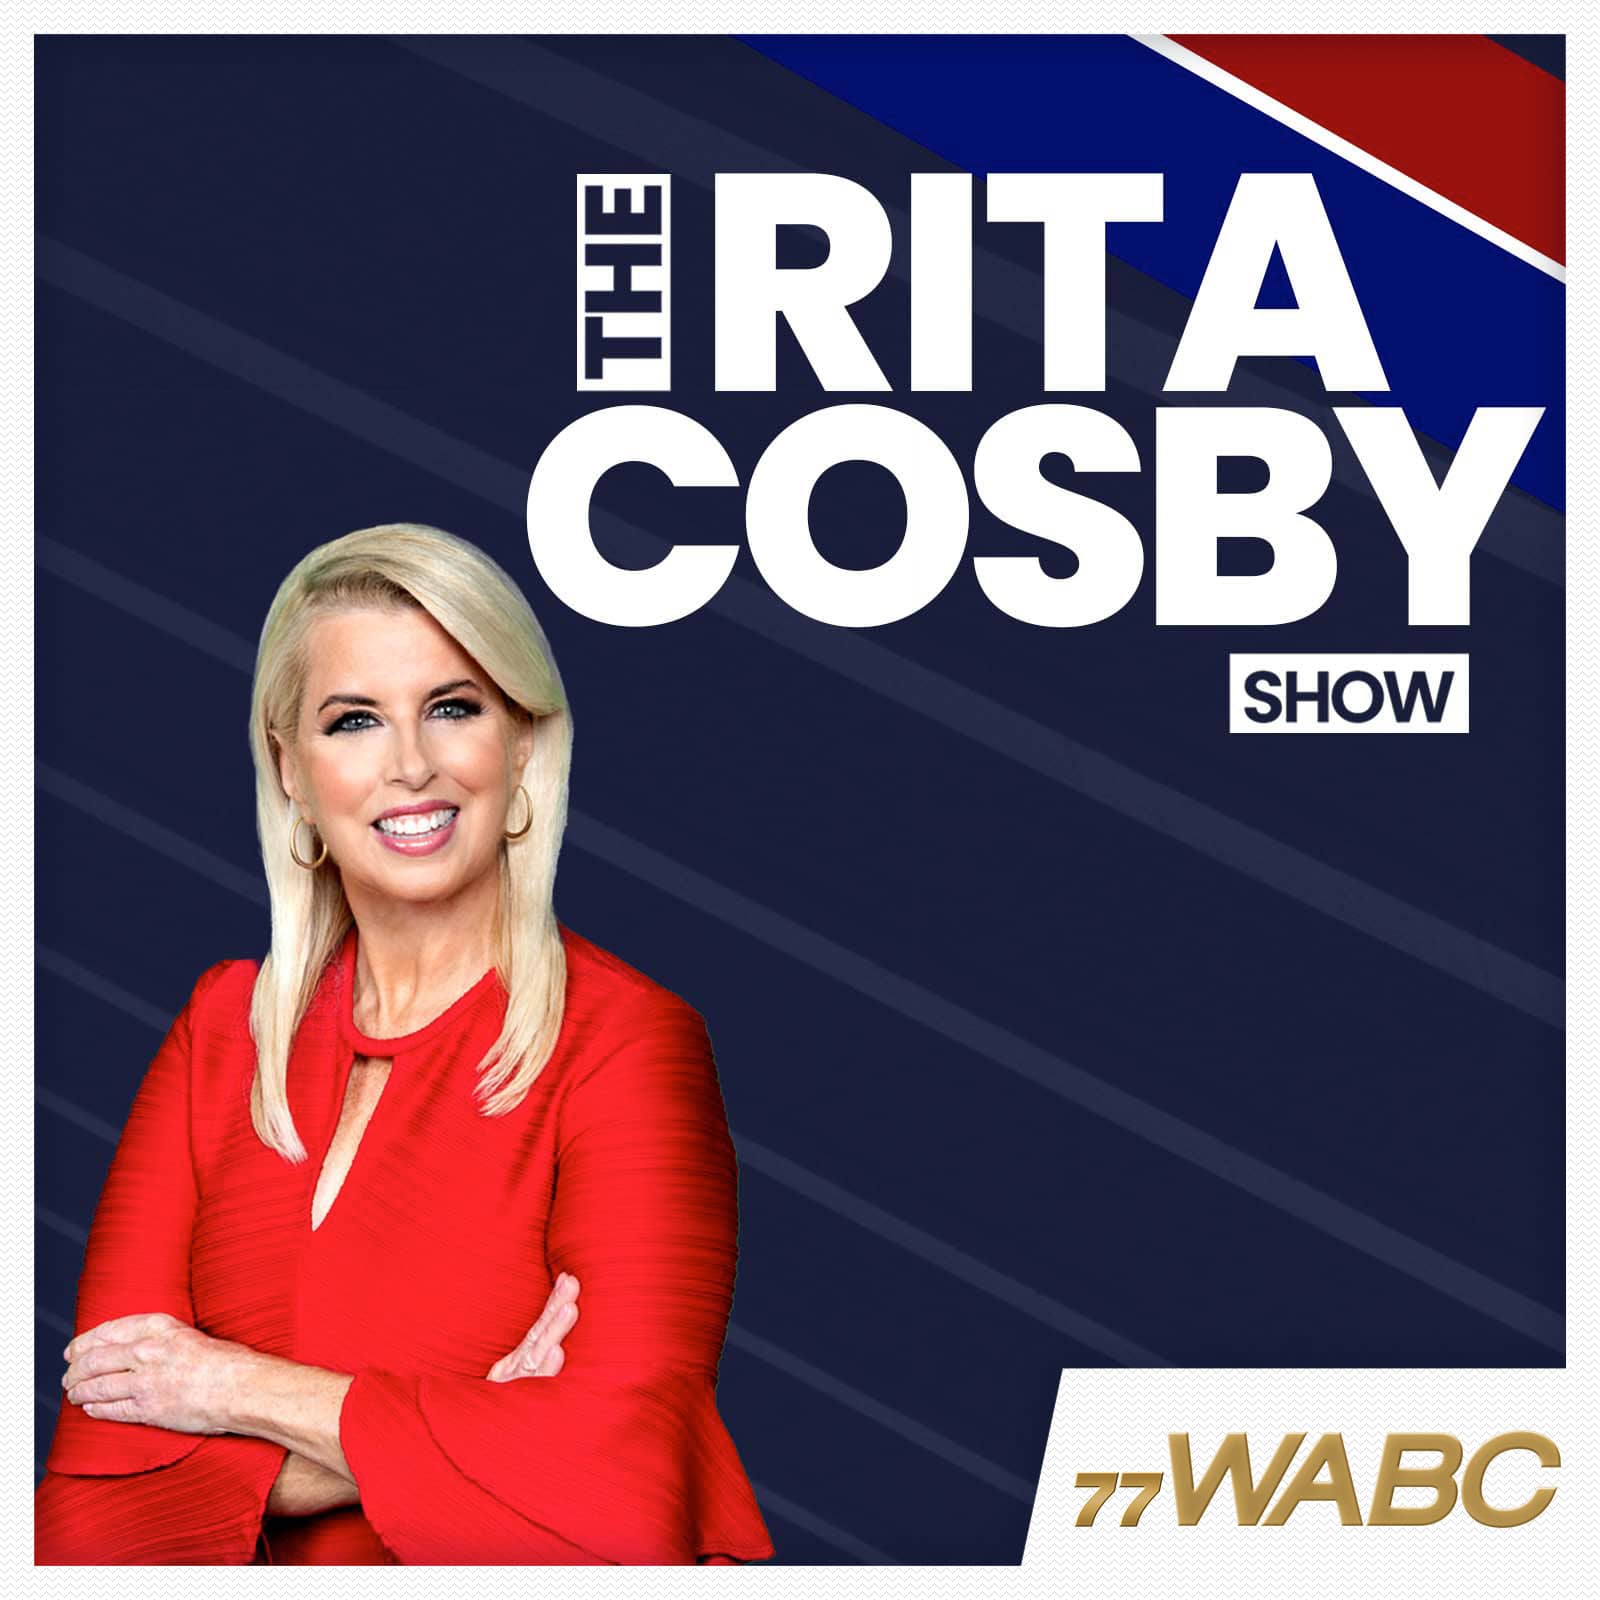 rita-cosby-podcast-new-logo-251